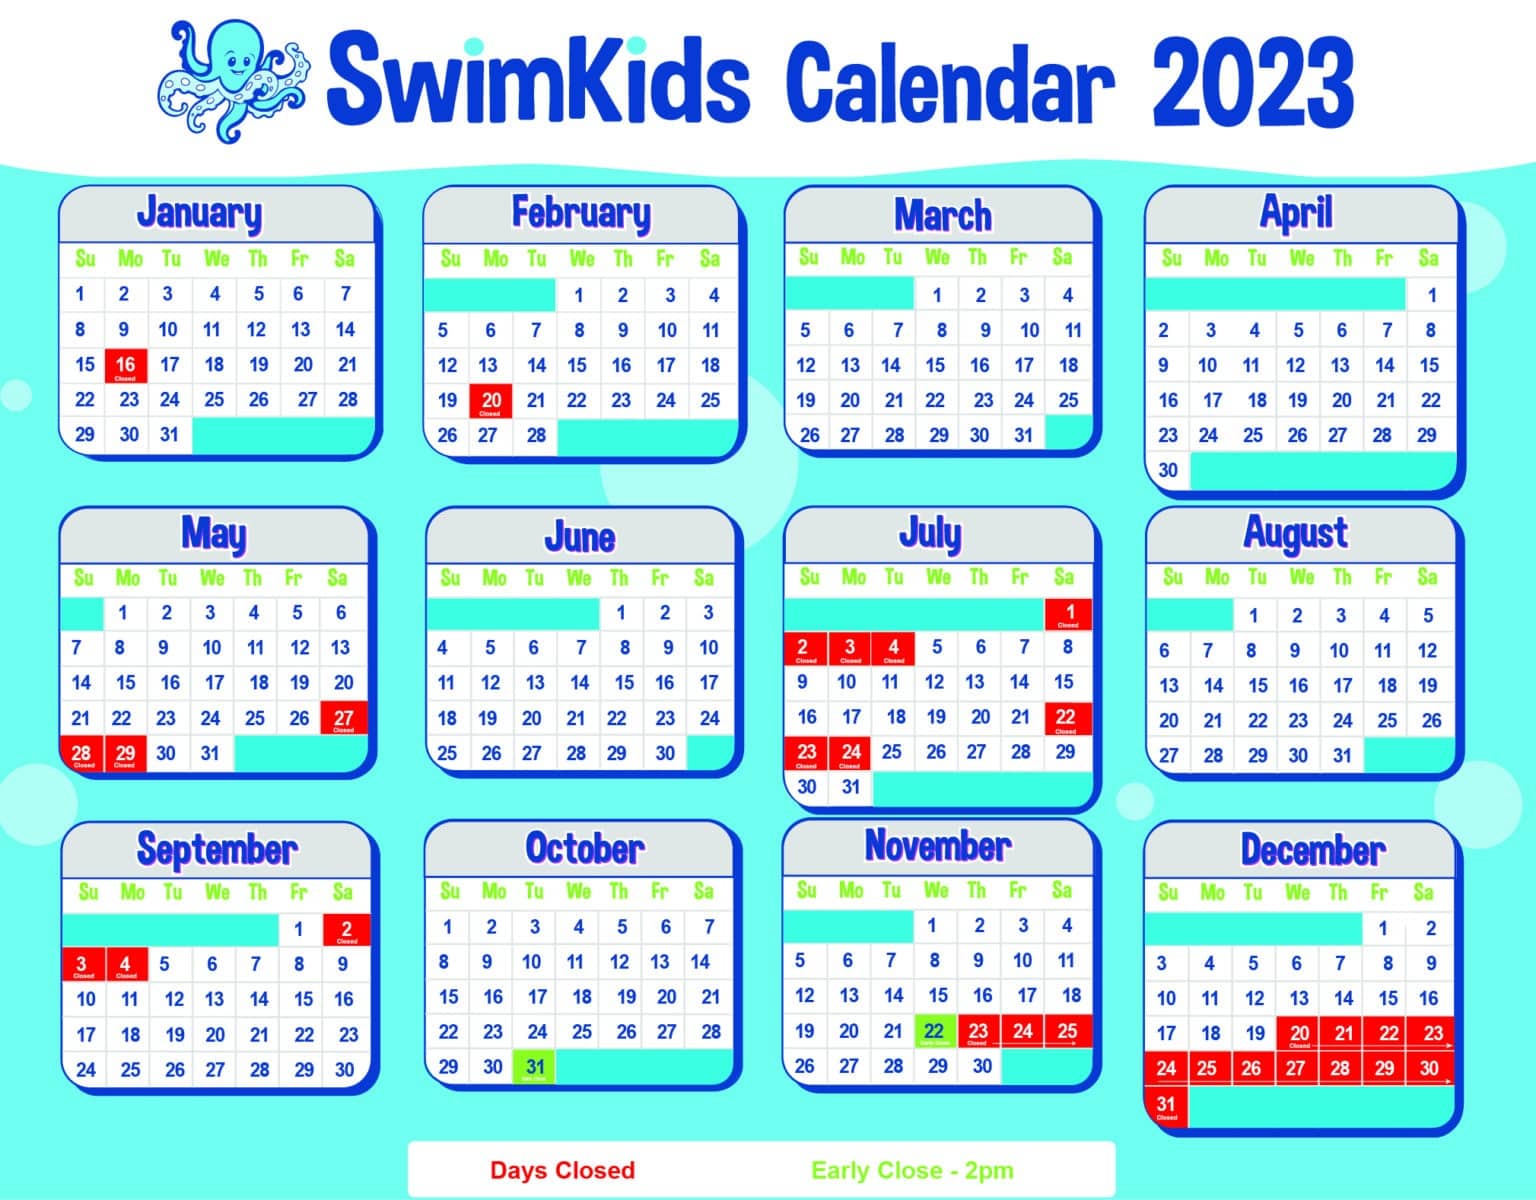 SwimKids Utah Holiday Calendar